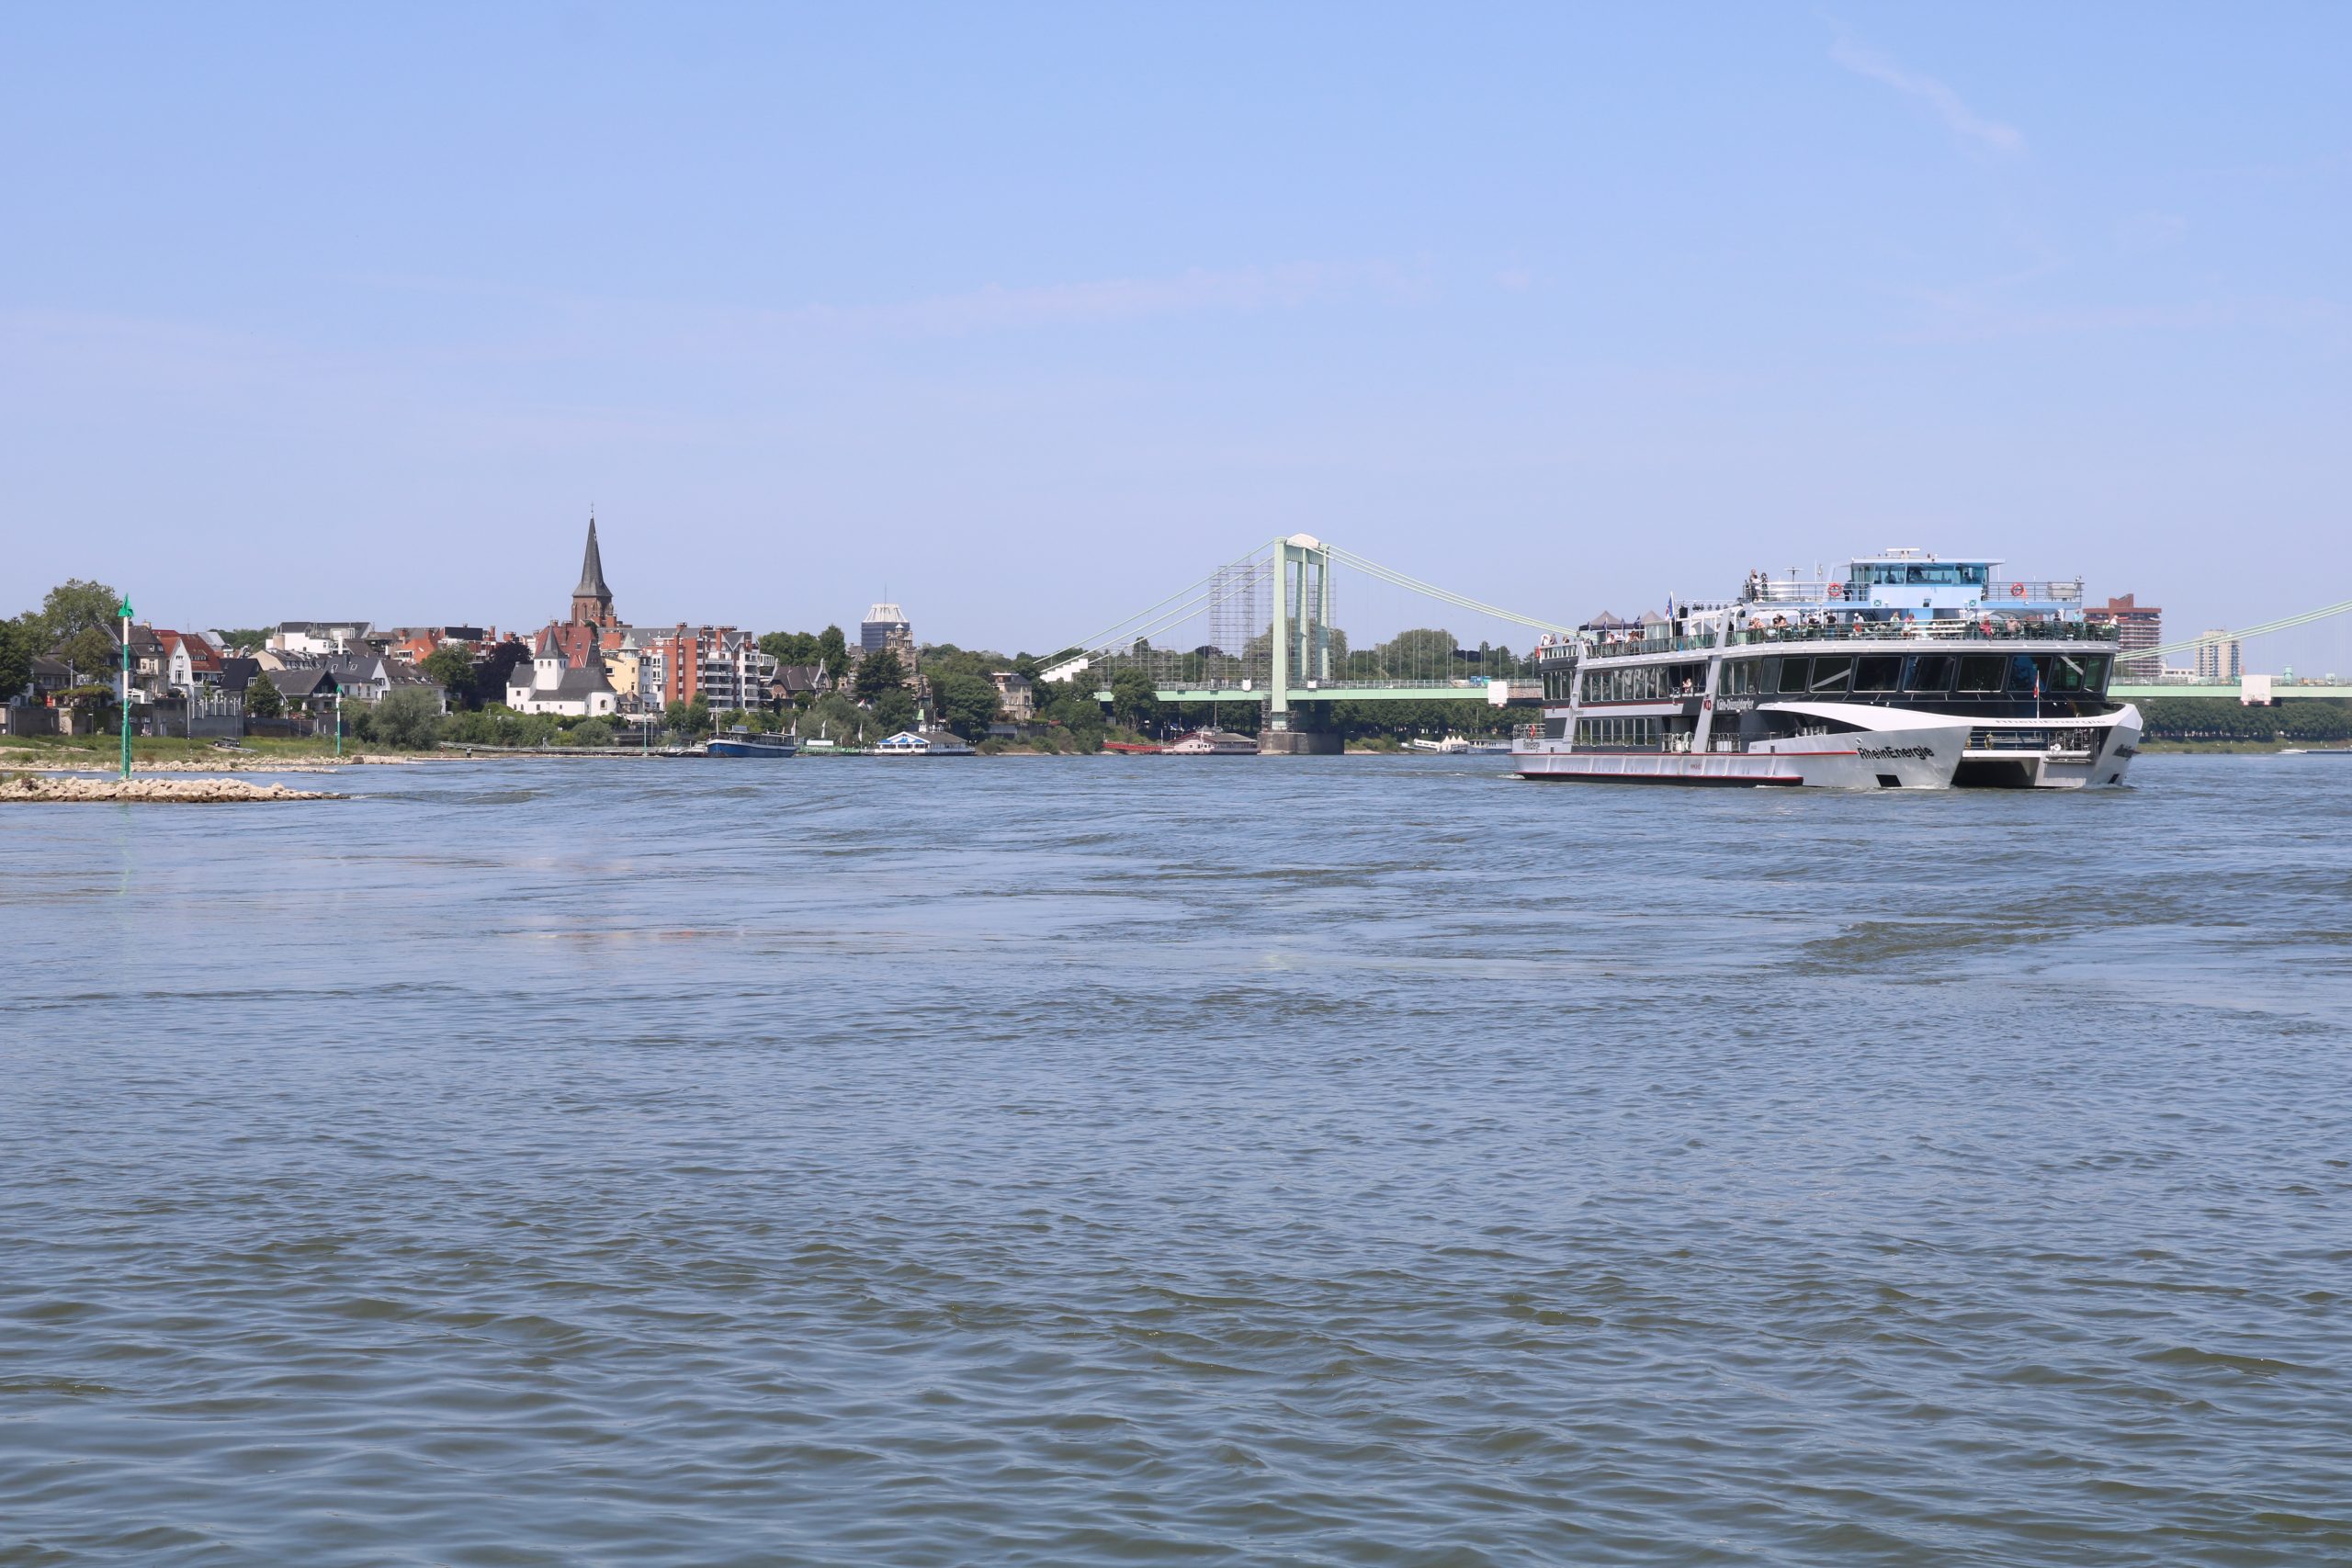 Ein Tag Urlaub auf dem Schiff für Kinder und Familien: Die MS RheinEnergie fährt rheinaufwärts an der schönen Rodenkirchener Kulisse vorbei. Foto: Thielen.